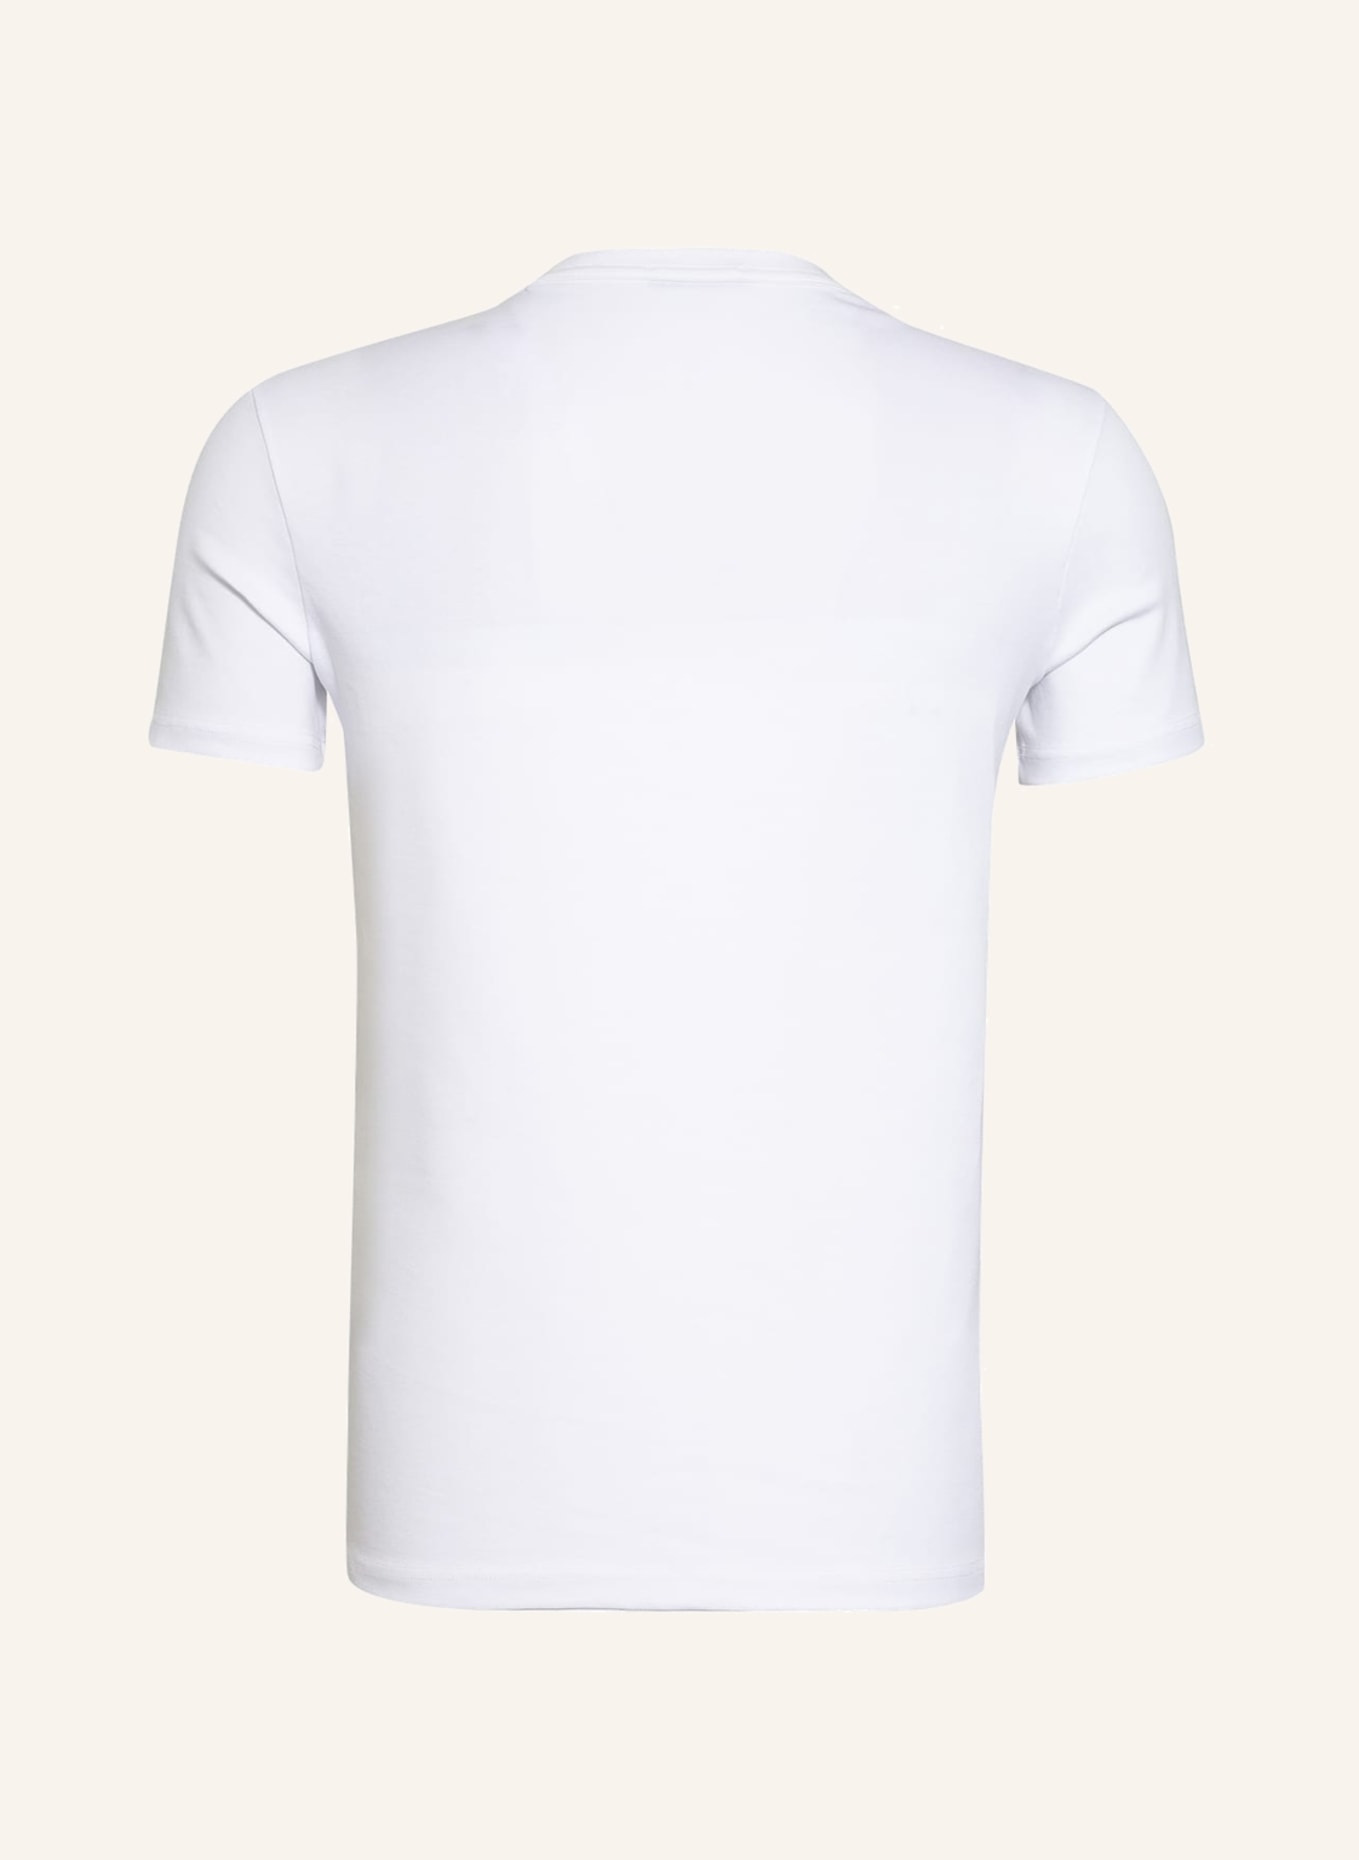 TOM FORD V-Shirt, Farbe: 100 WHITE (Bild 2)